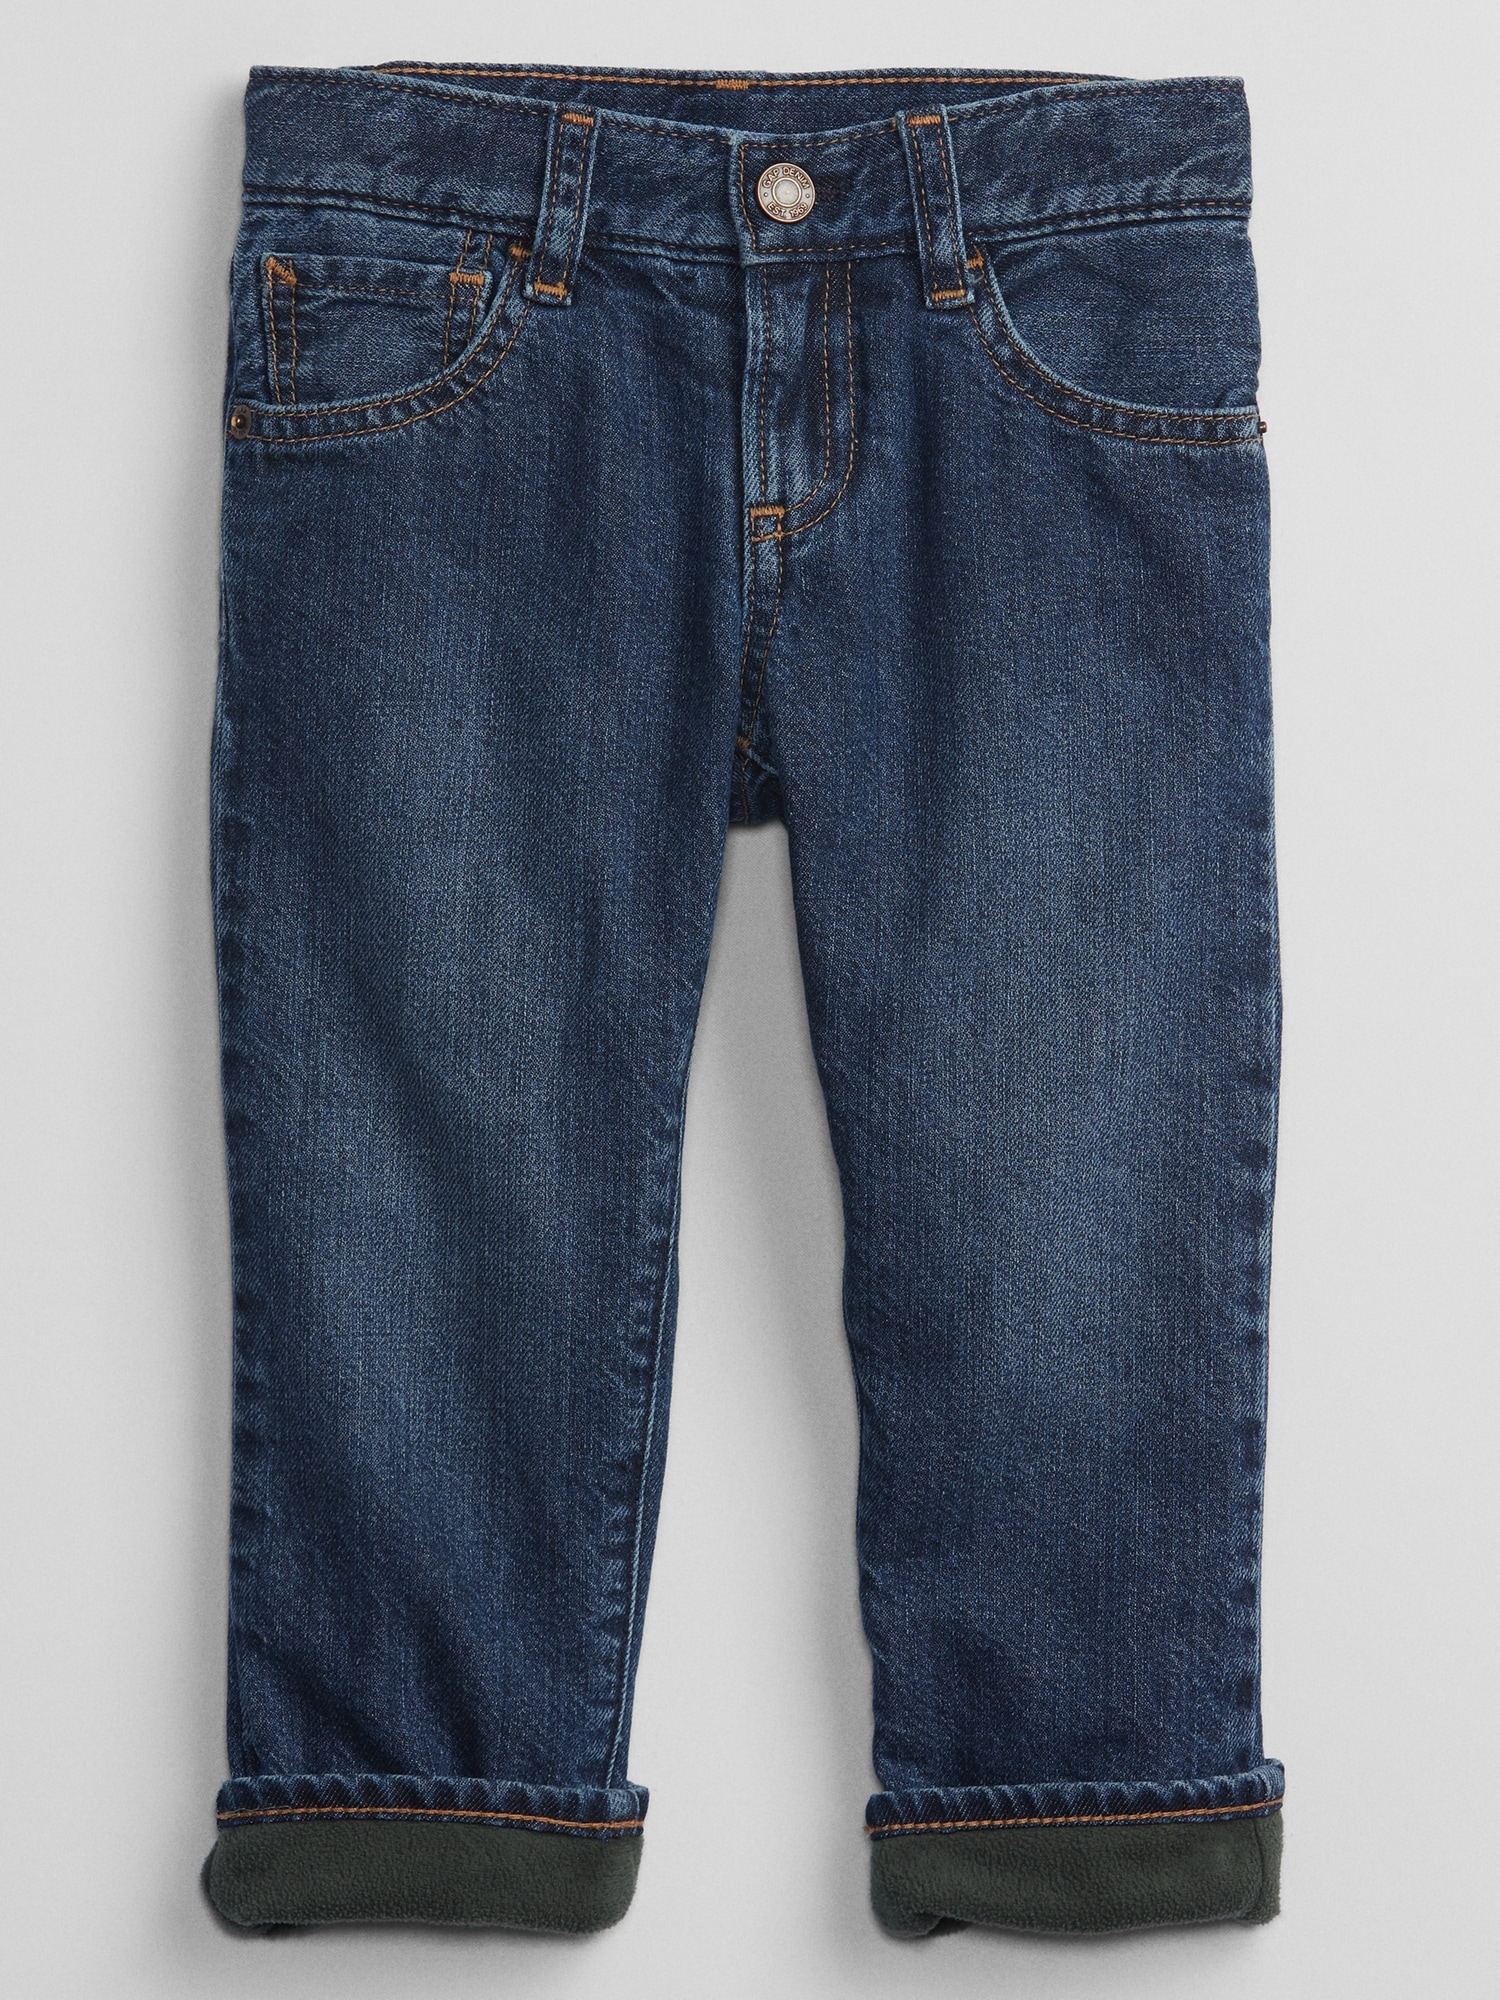 Full Blue Fleece Lined 5 Pocket Jeans | Womens Bottoms ⋆ Meltonstravel